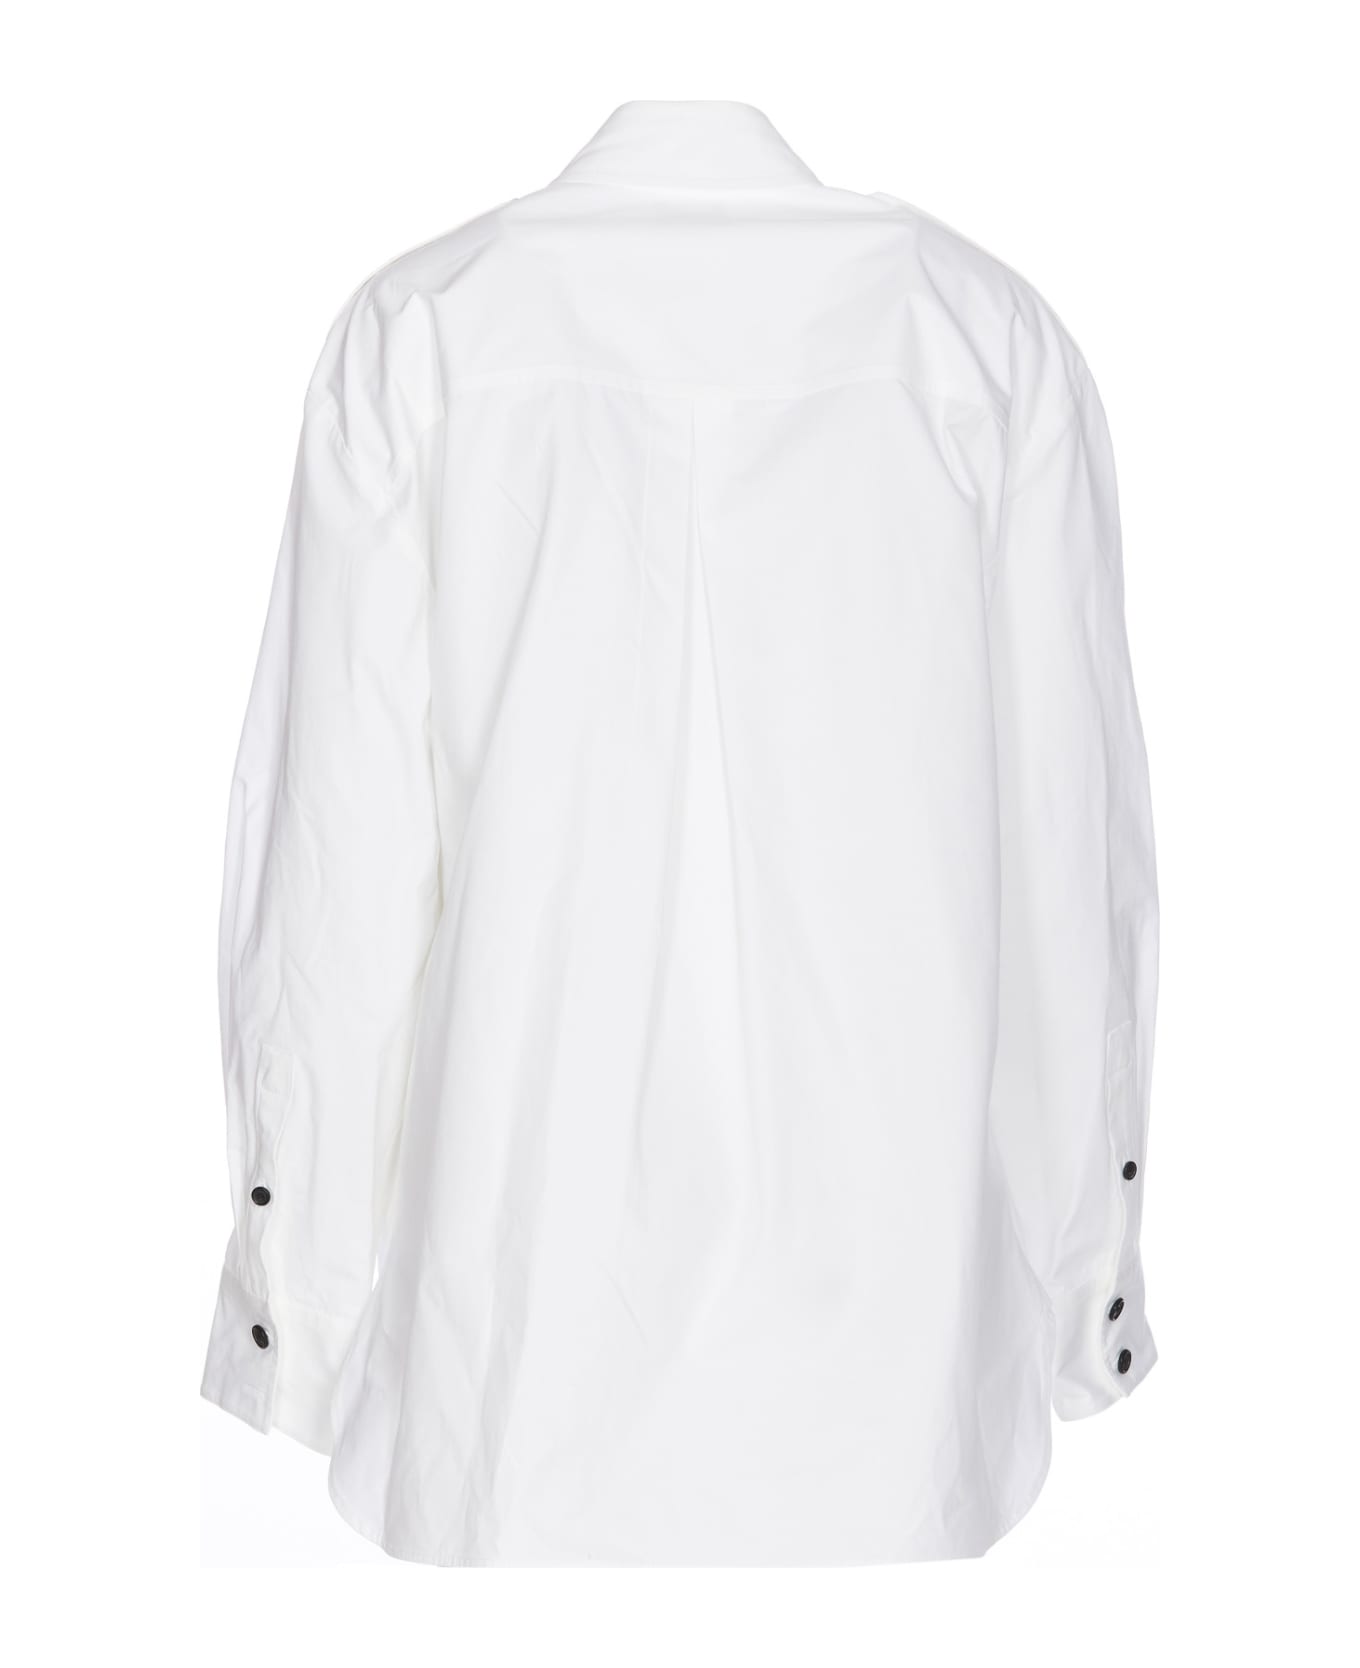 Khaite Missa Shirt - White